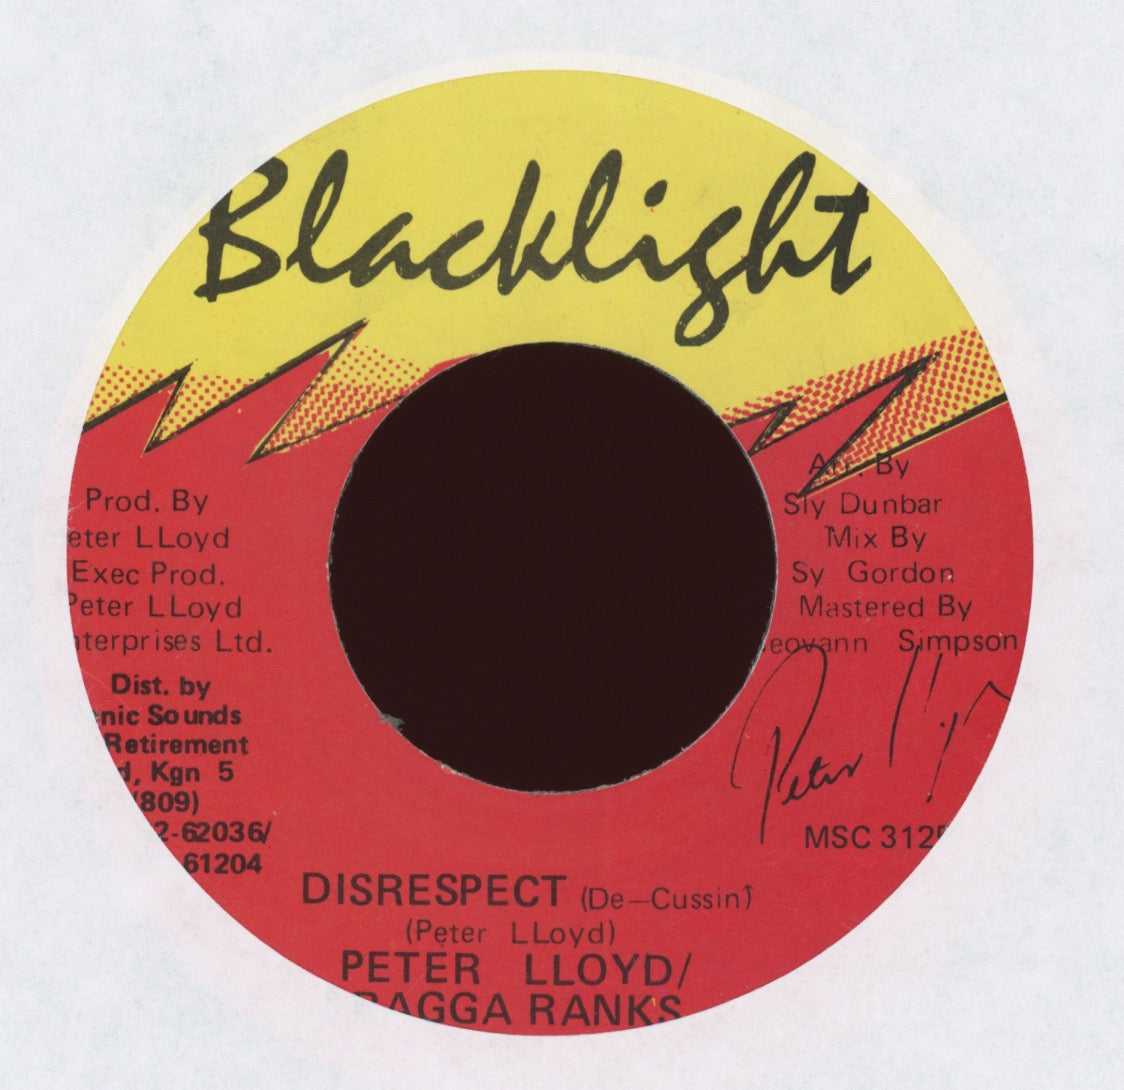 Peter Lloyd & Fragga Ranks - Disrespect on Blacklight